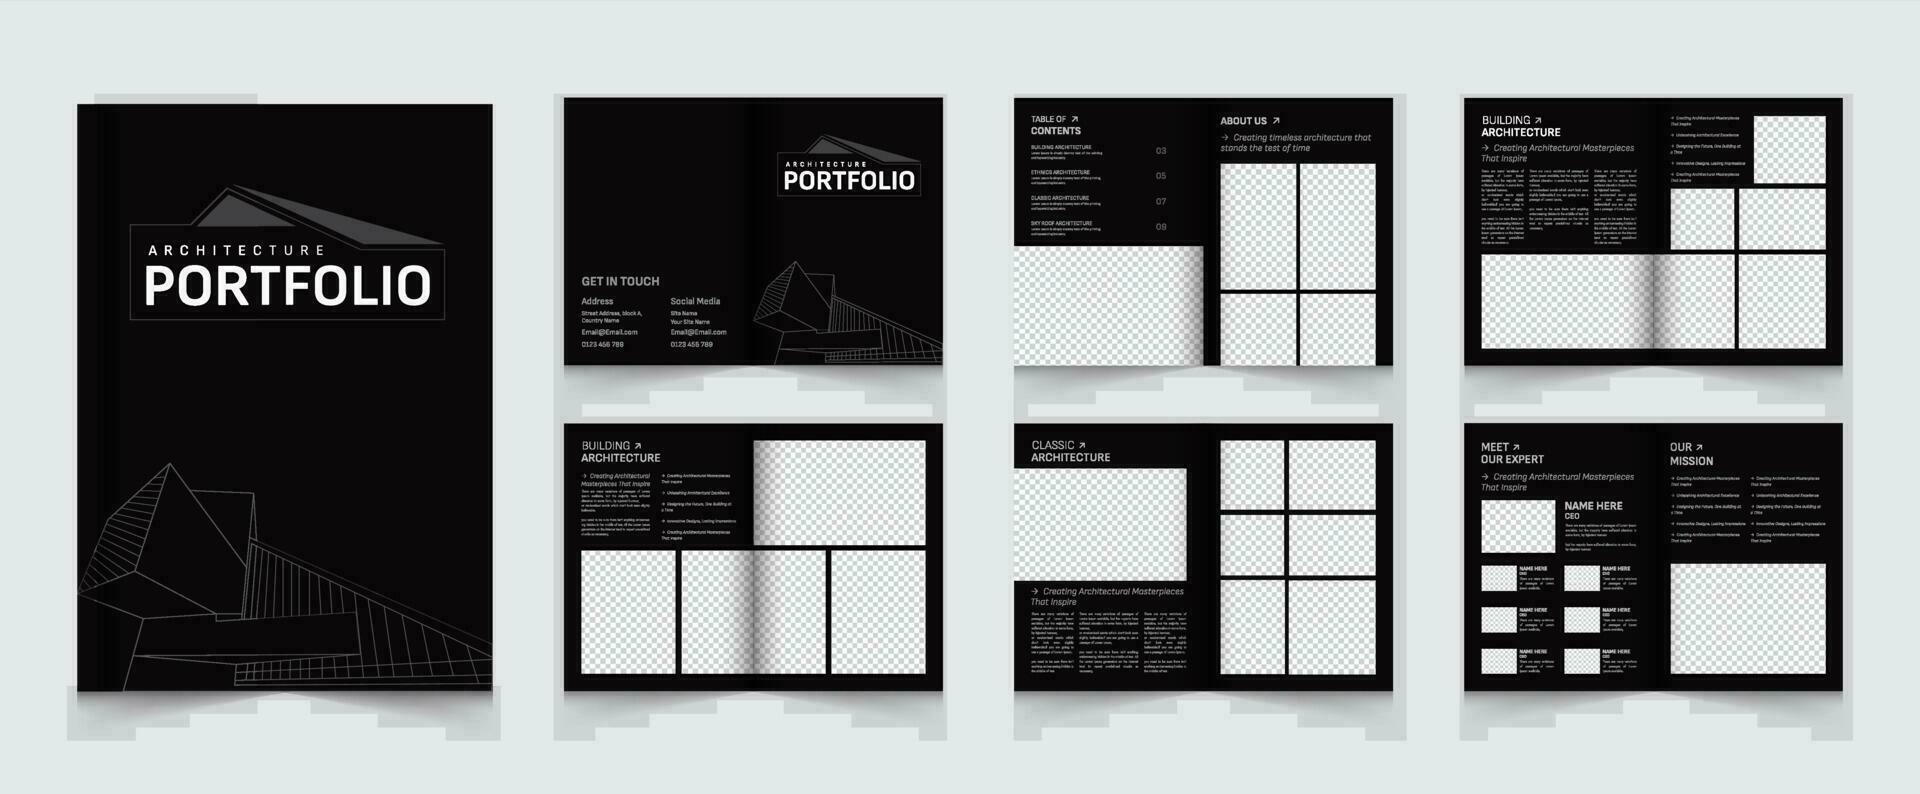 die Architektur Portfolio Layout Vorlage oder Innere Portfolio Design vektor